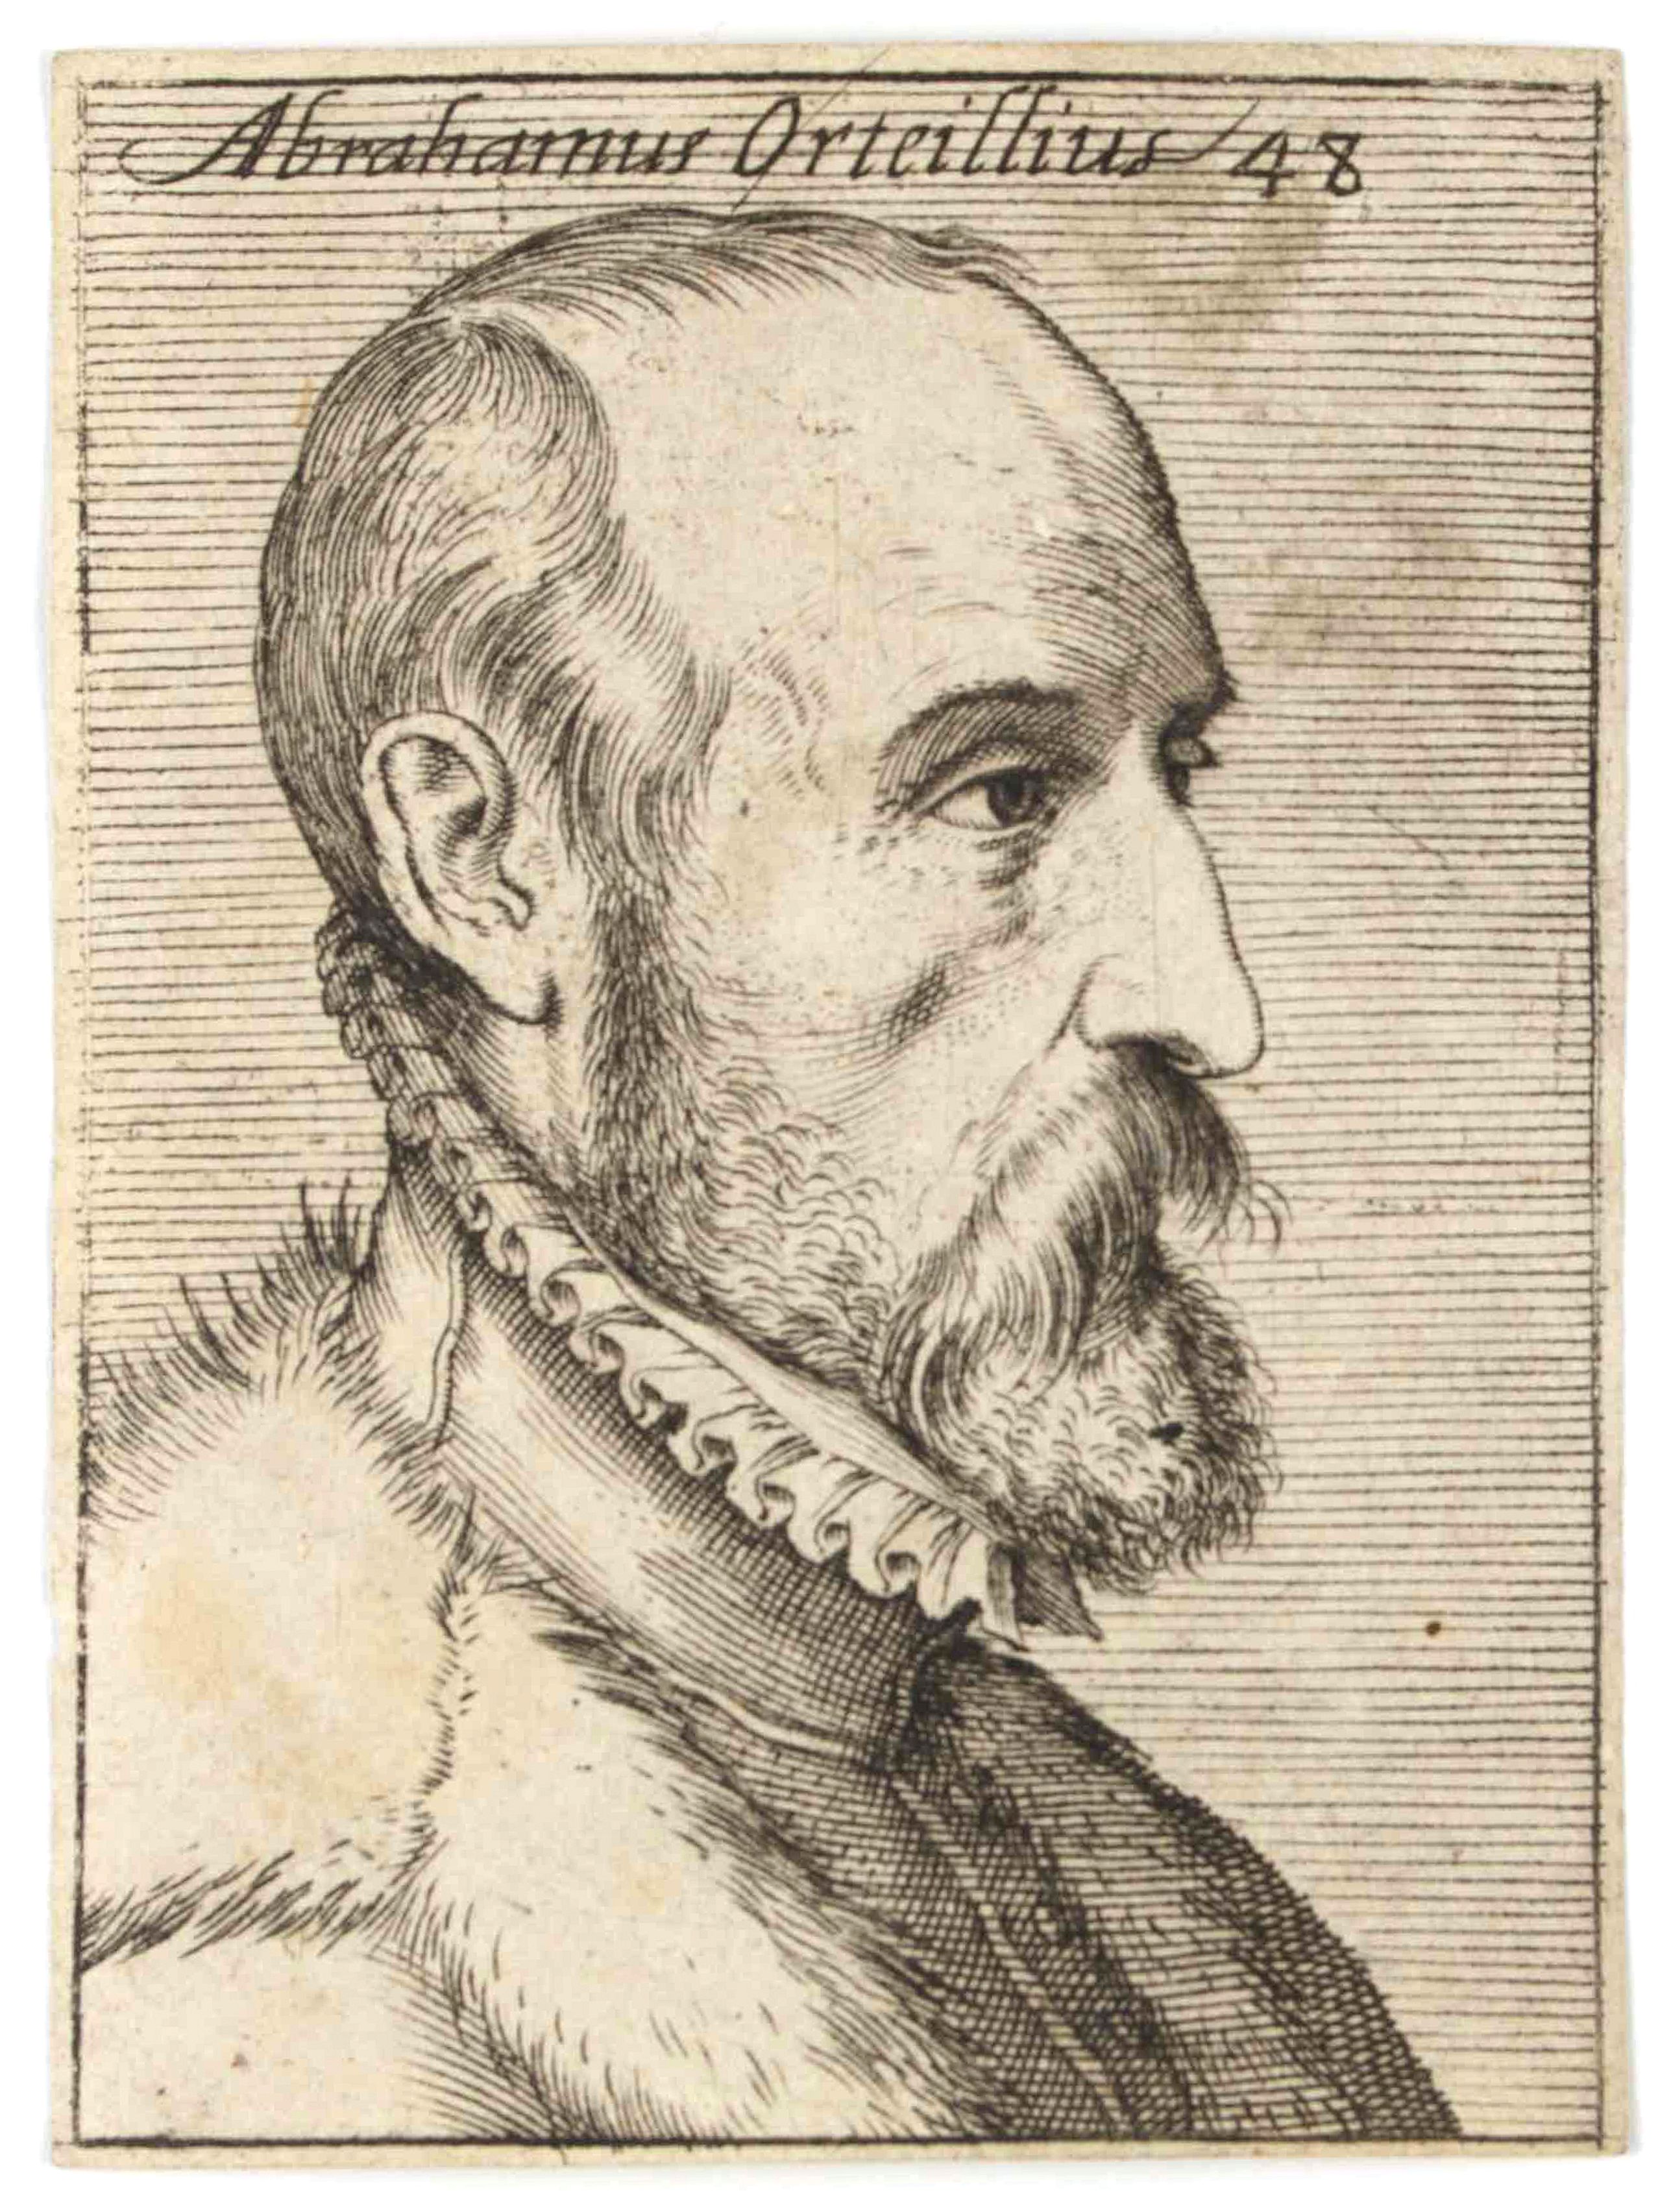 Abrahamus Orteilius